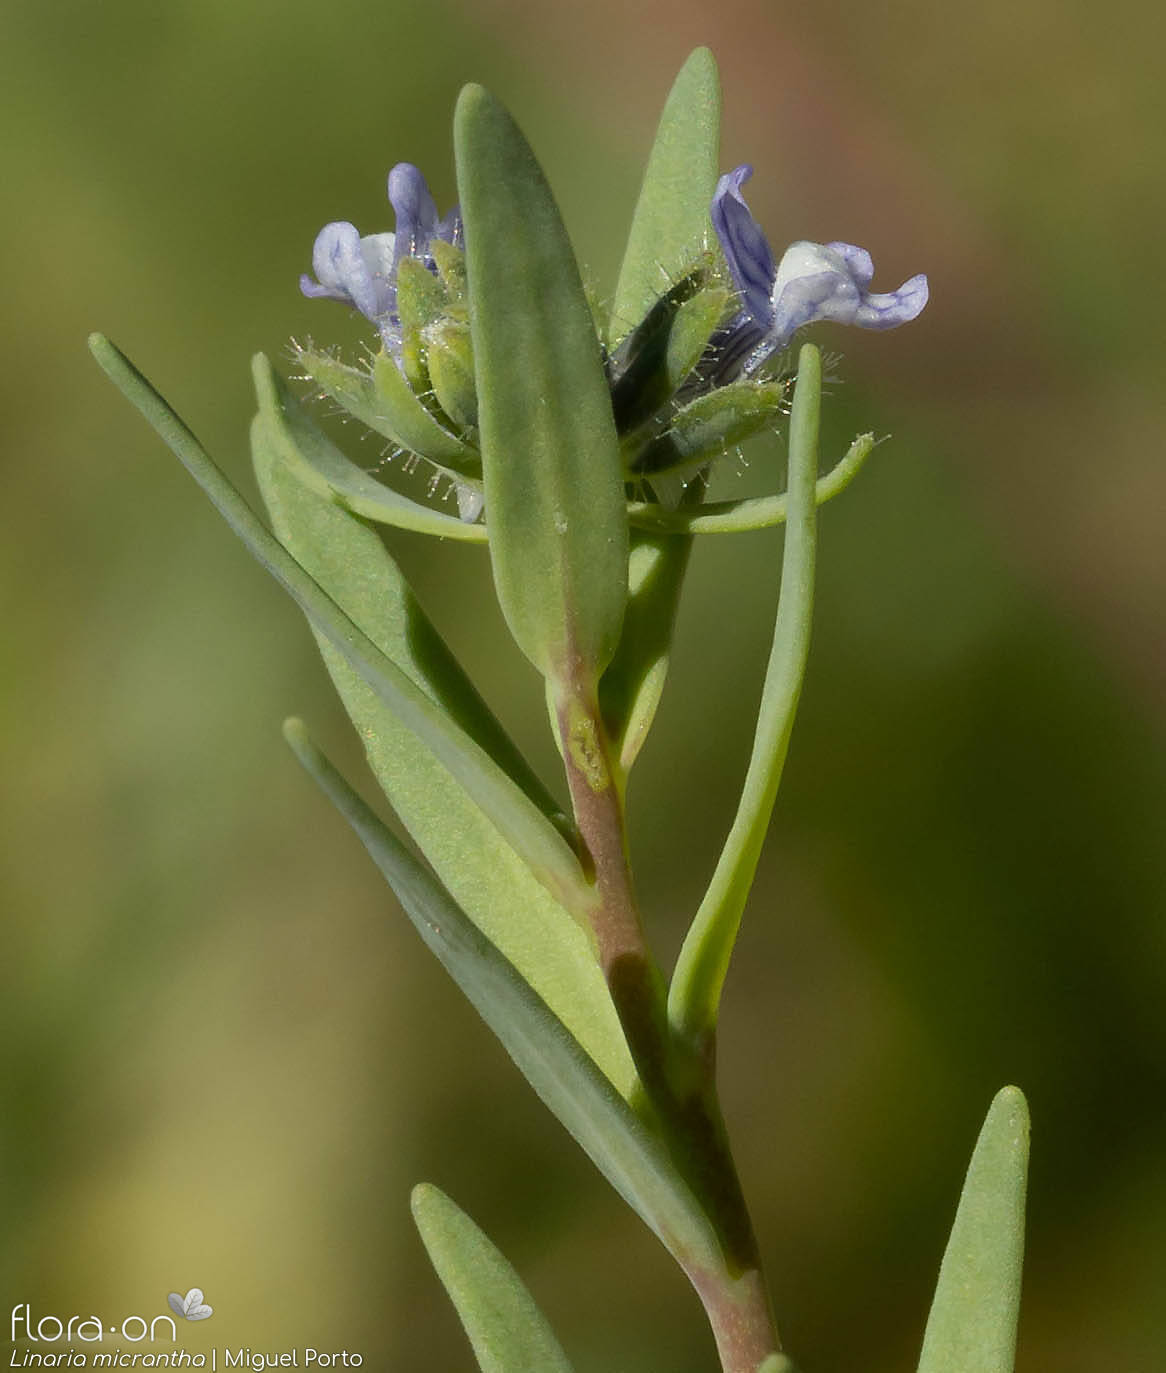 Linaria micrantha - Flor (geral) | Miguel Porto; CC BY-NC 4.0